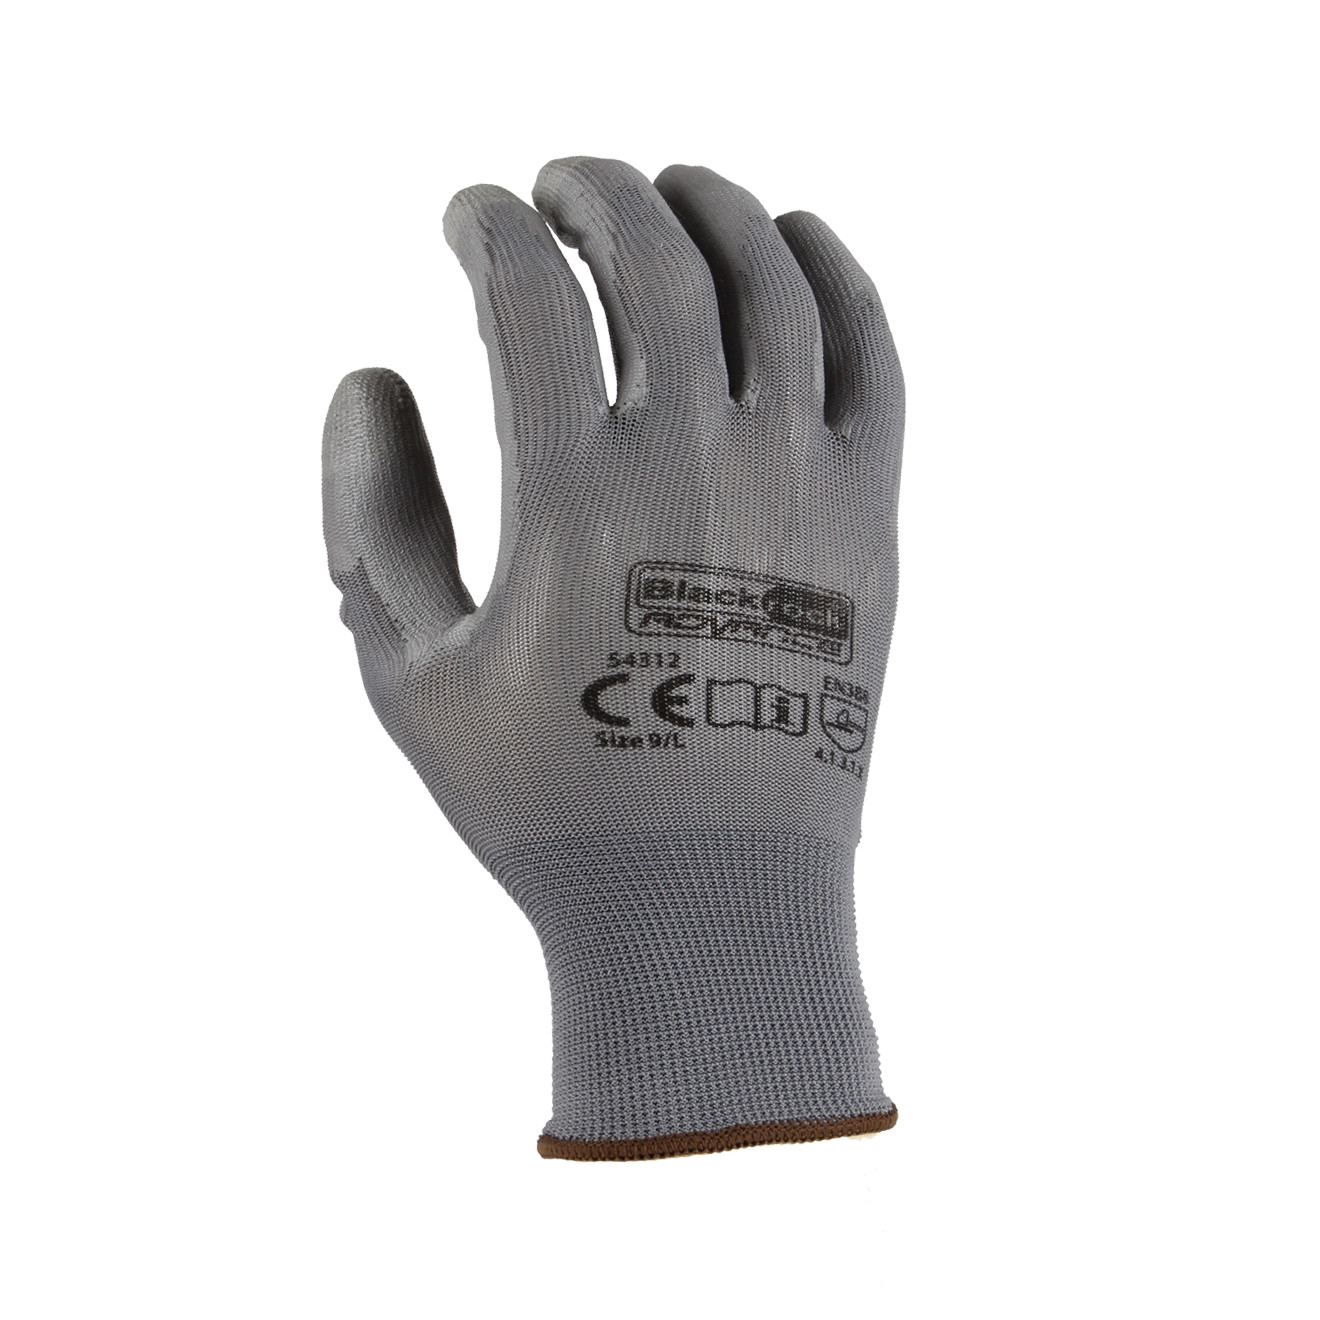 Smart Touch Work Glove